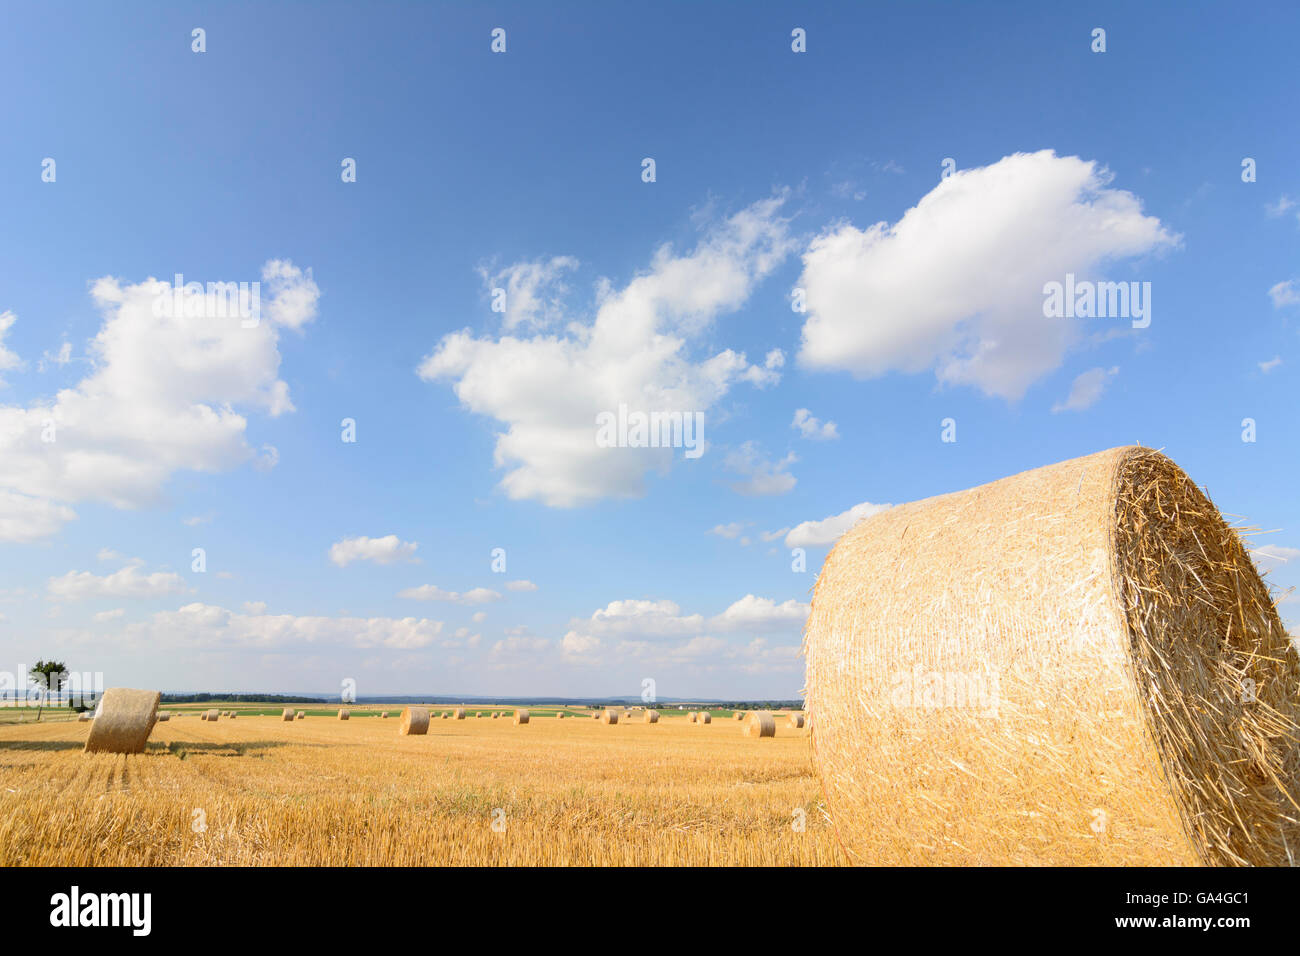 Geras grano cosechado campos con fardos de paja, Niederösterreich Austria Austria Inferior Waldviertel Foto de stock